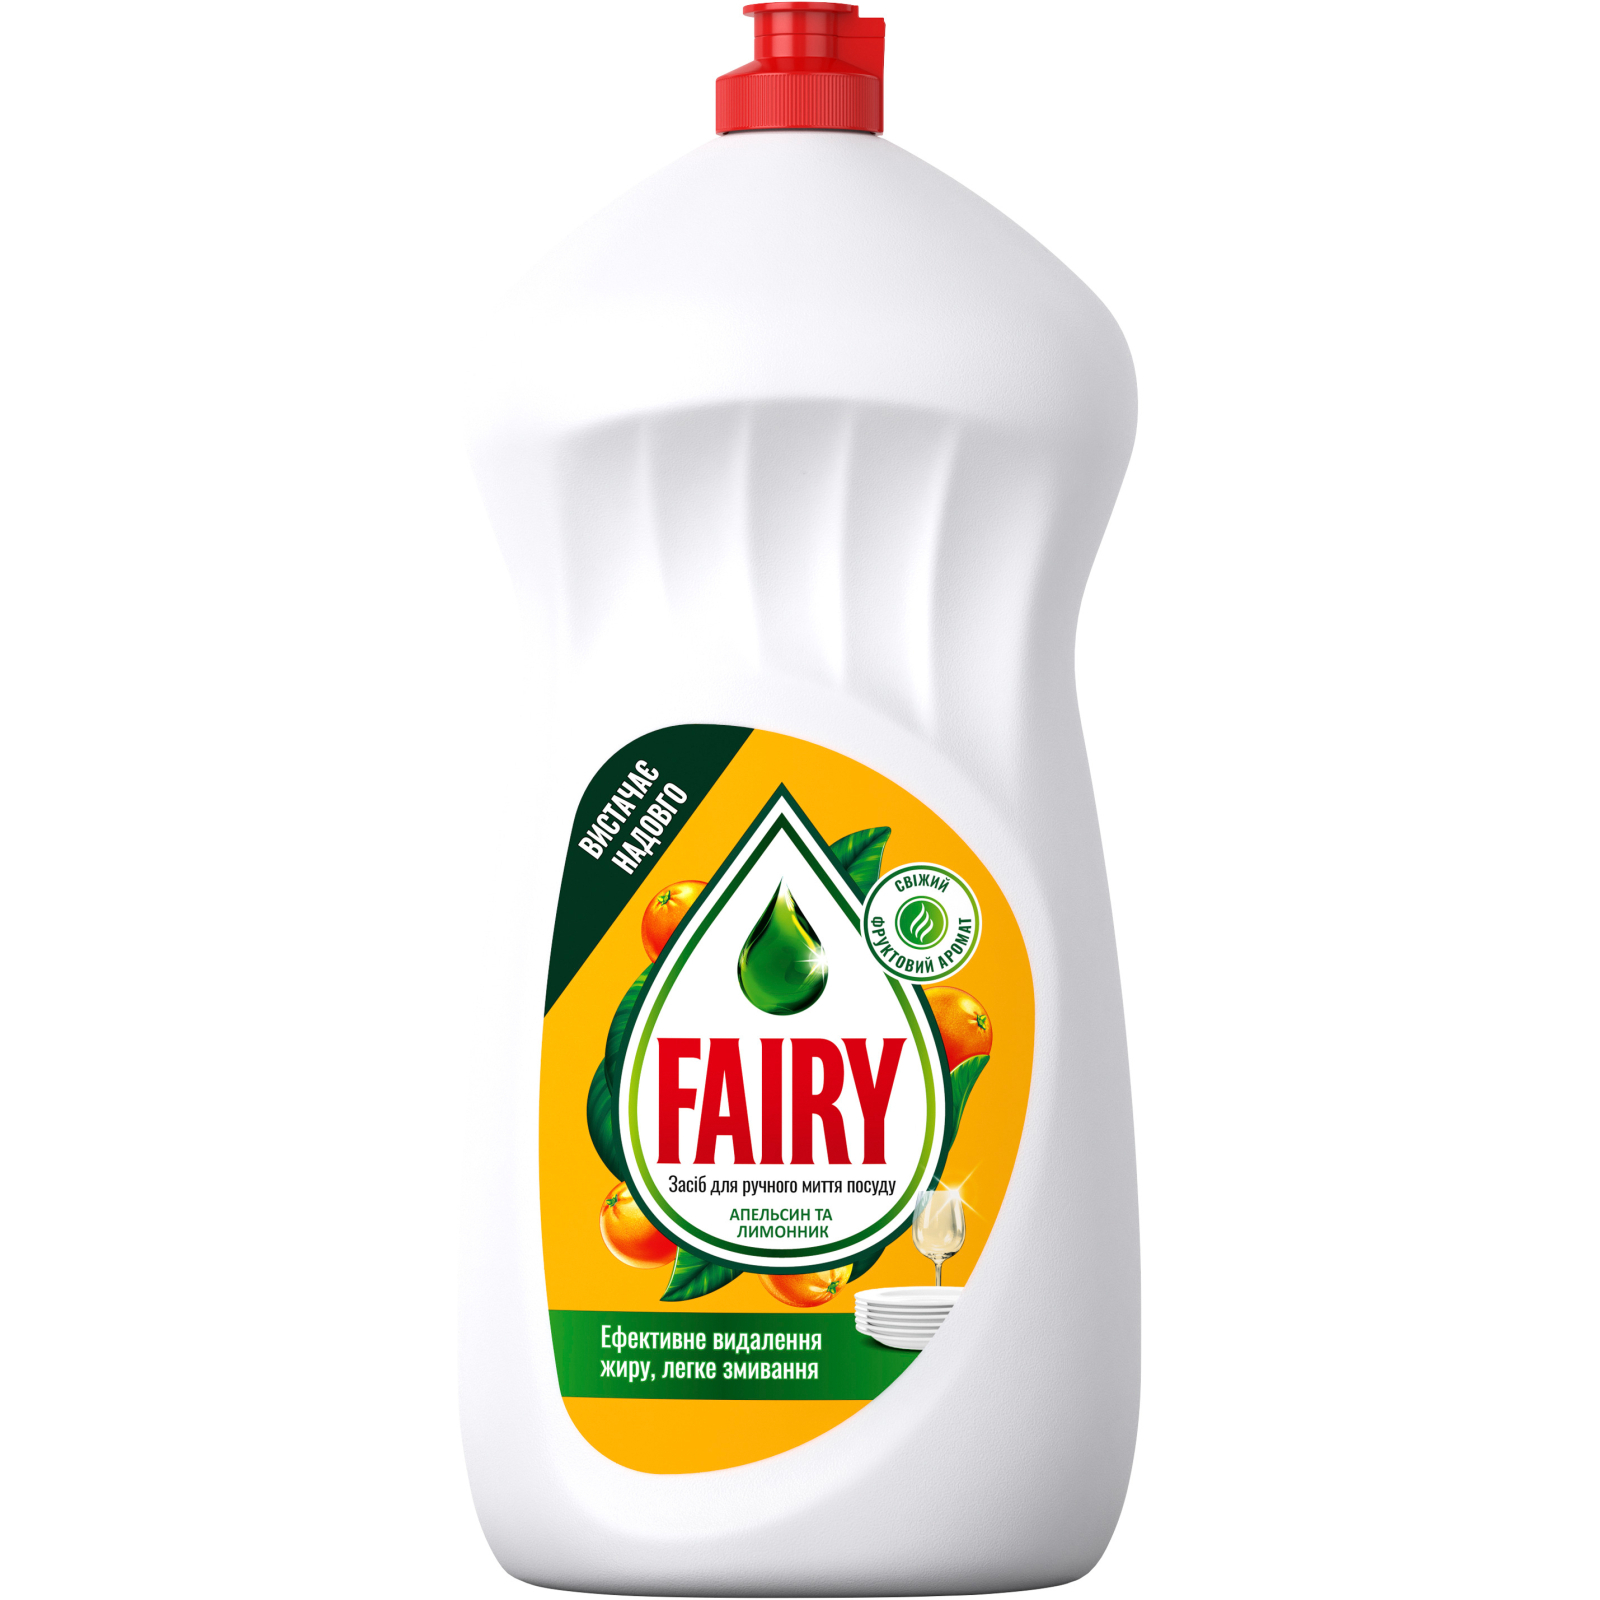 Средство для ручного мытья посуды Fairy Апельсин и Лимонник 1.5 л (8700216397216)